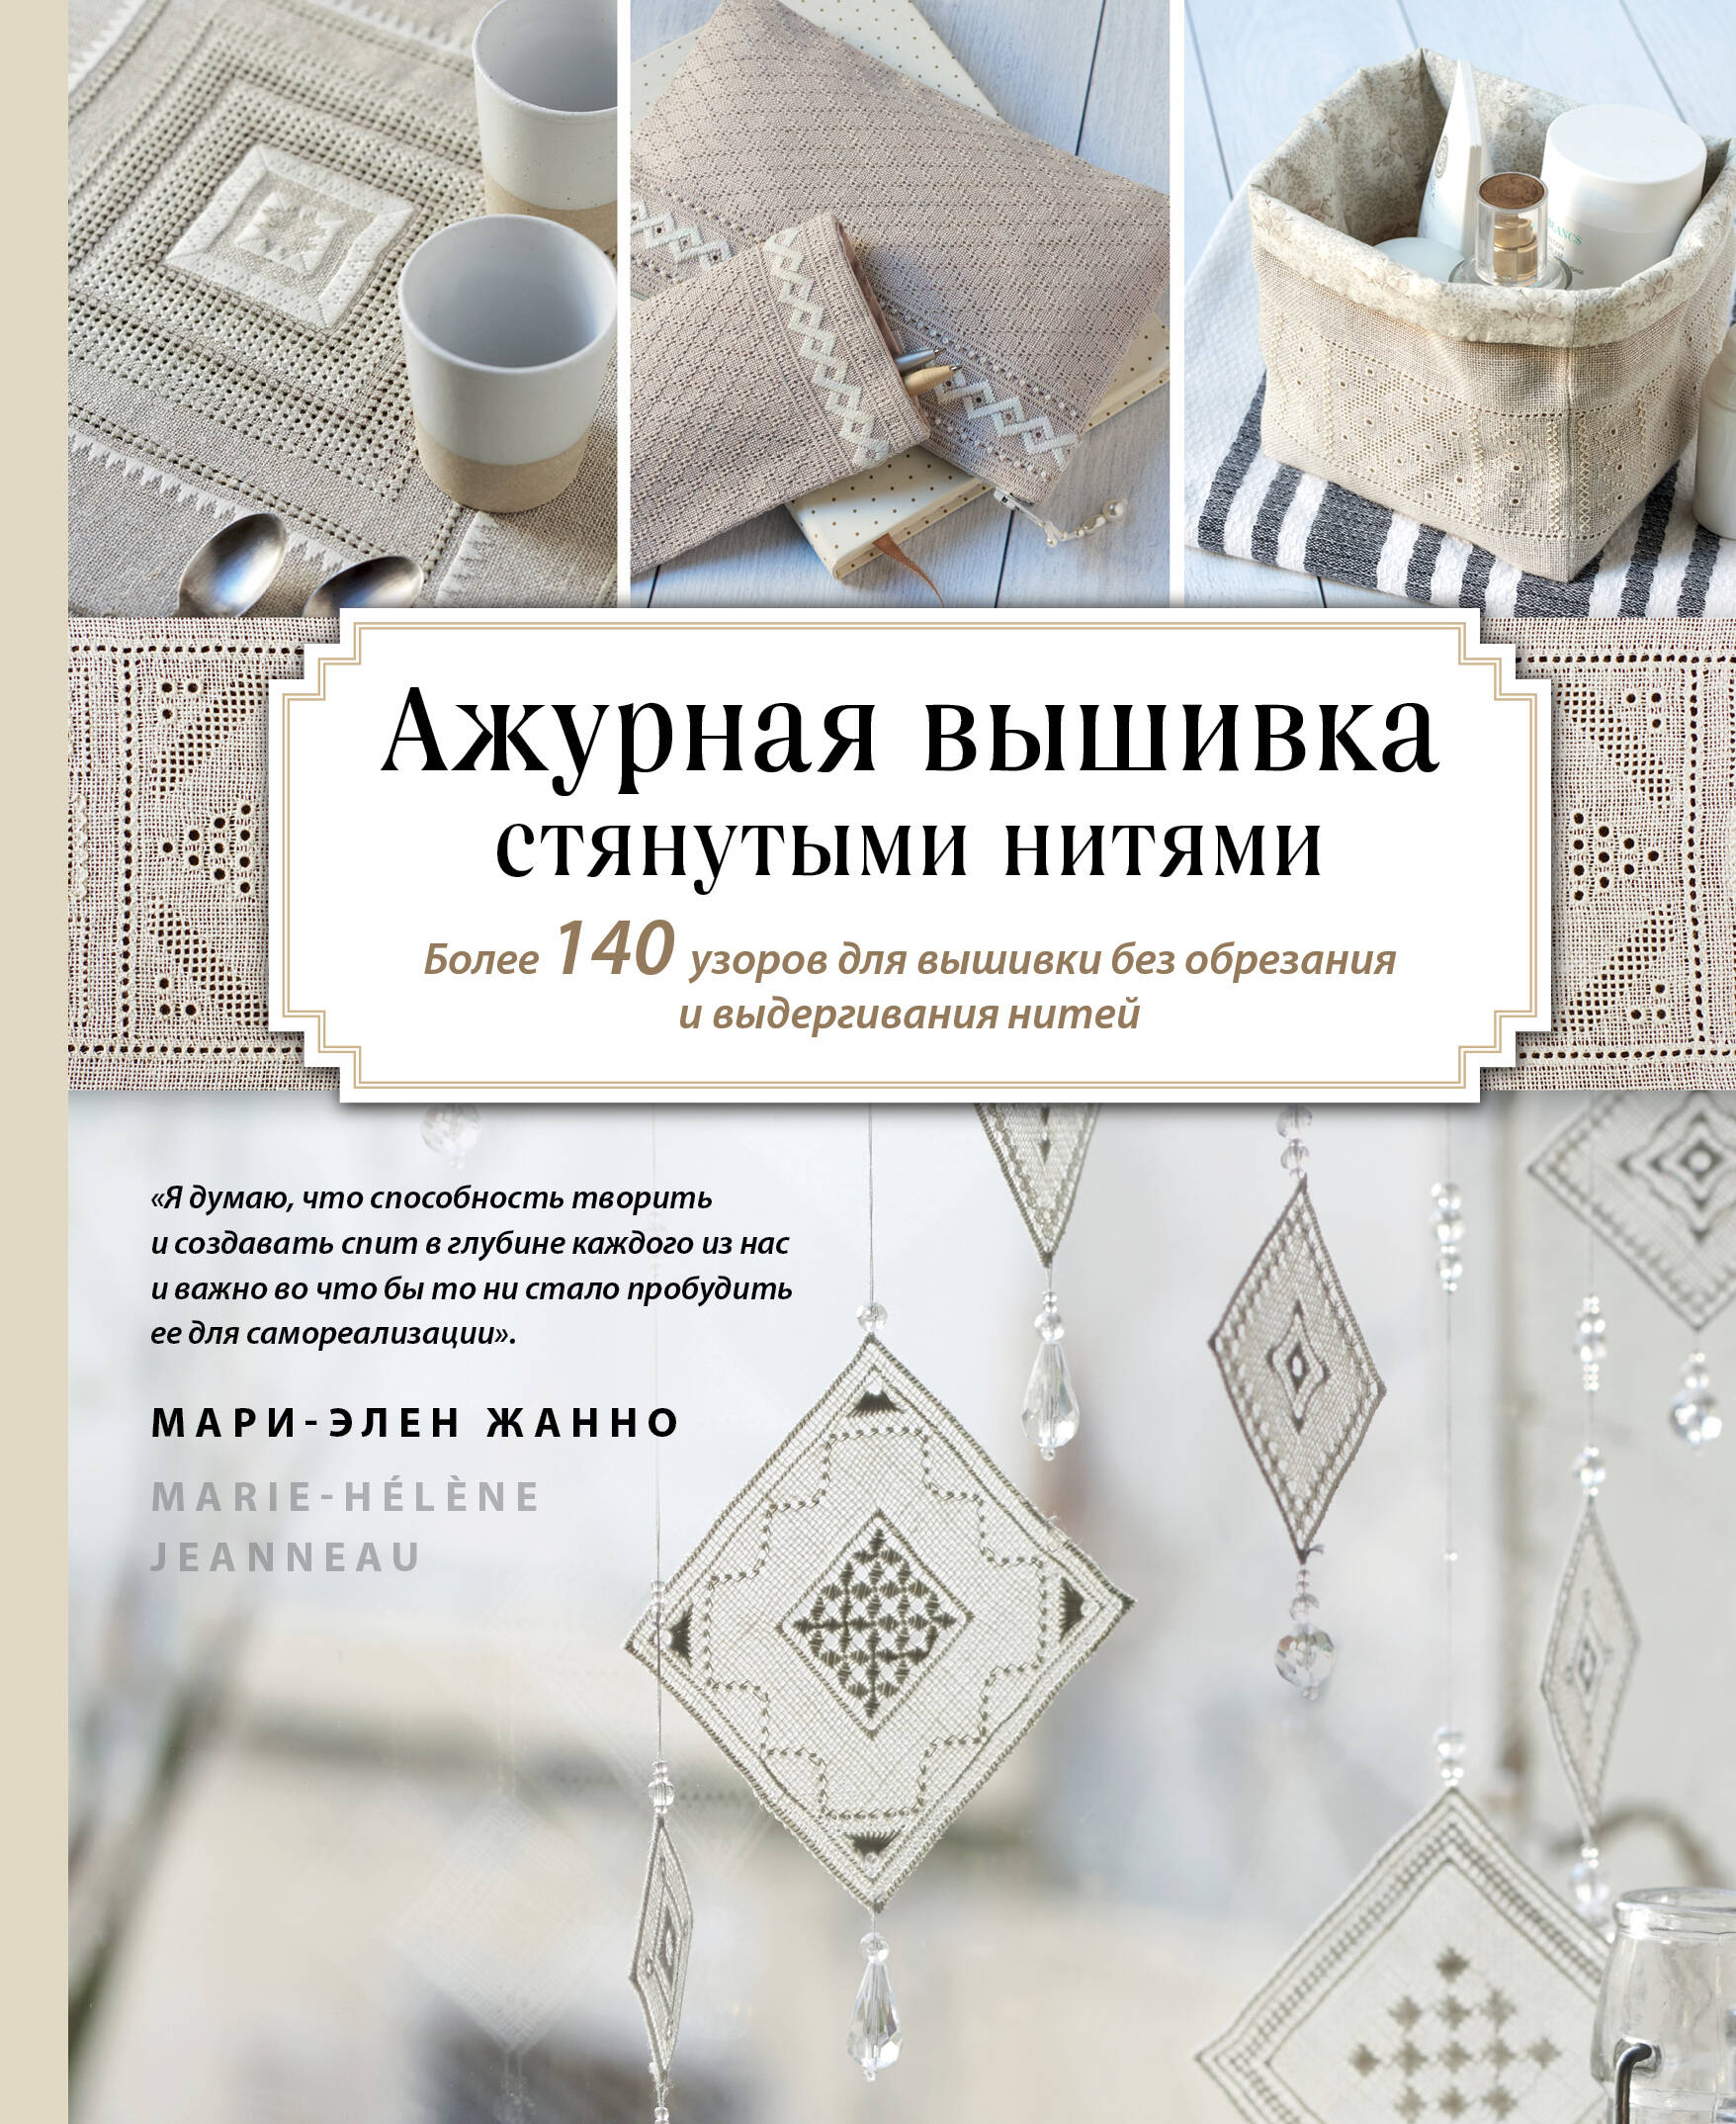 Материалы для творчества (схемы для вышивки) в интернет-магазине баштрен.рф